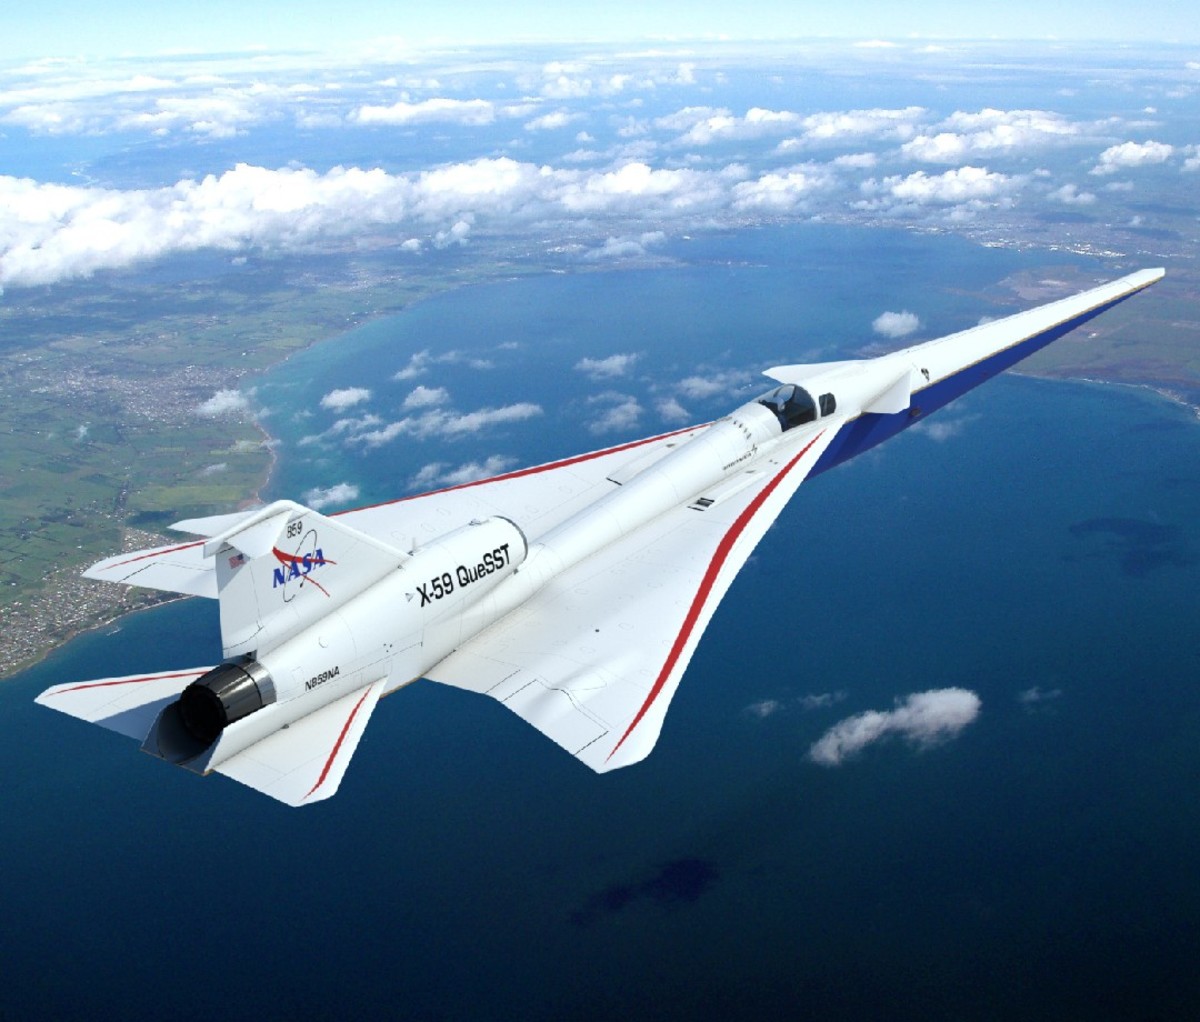 NASA's X-59